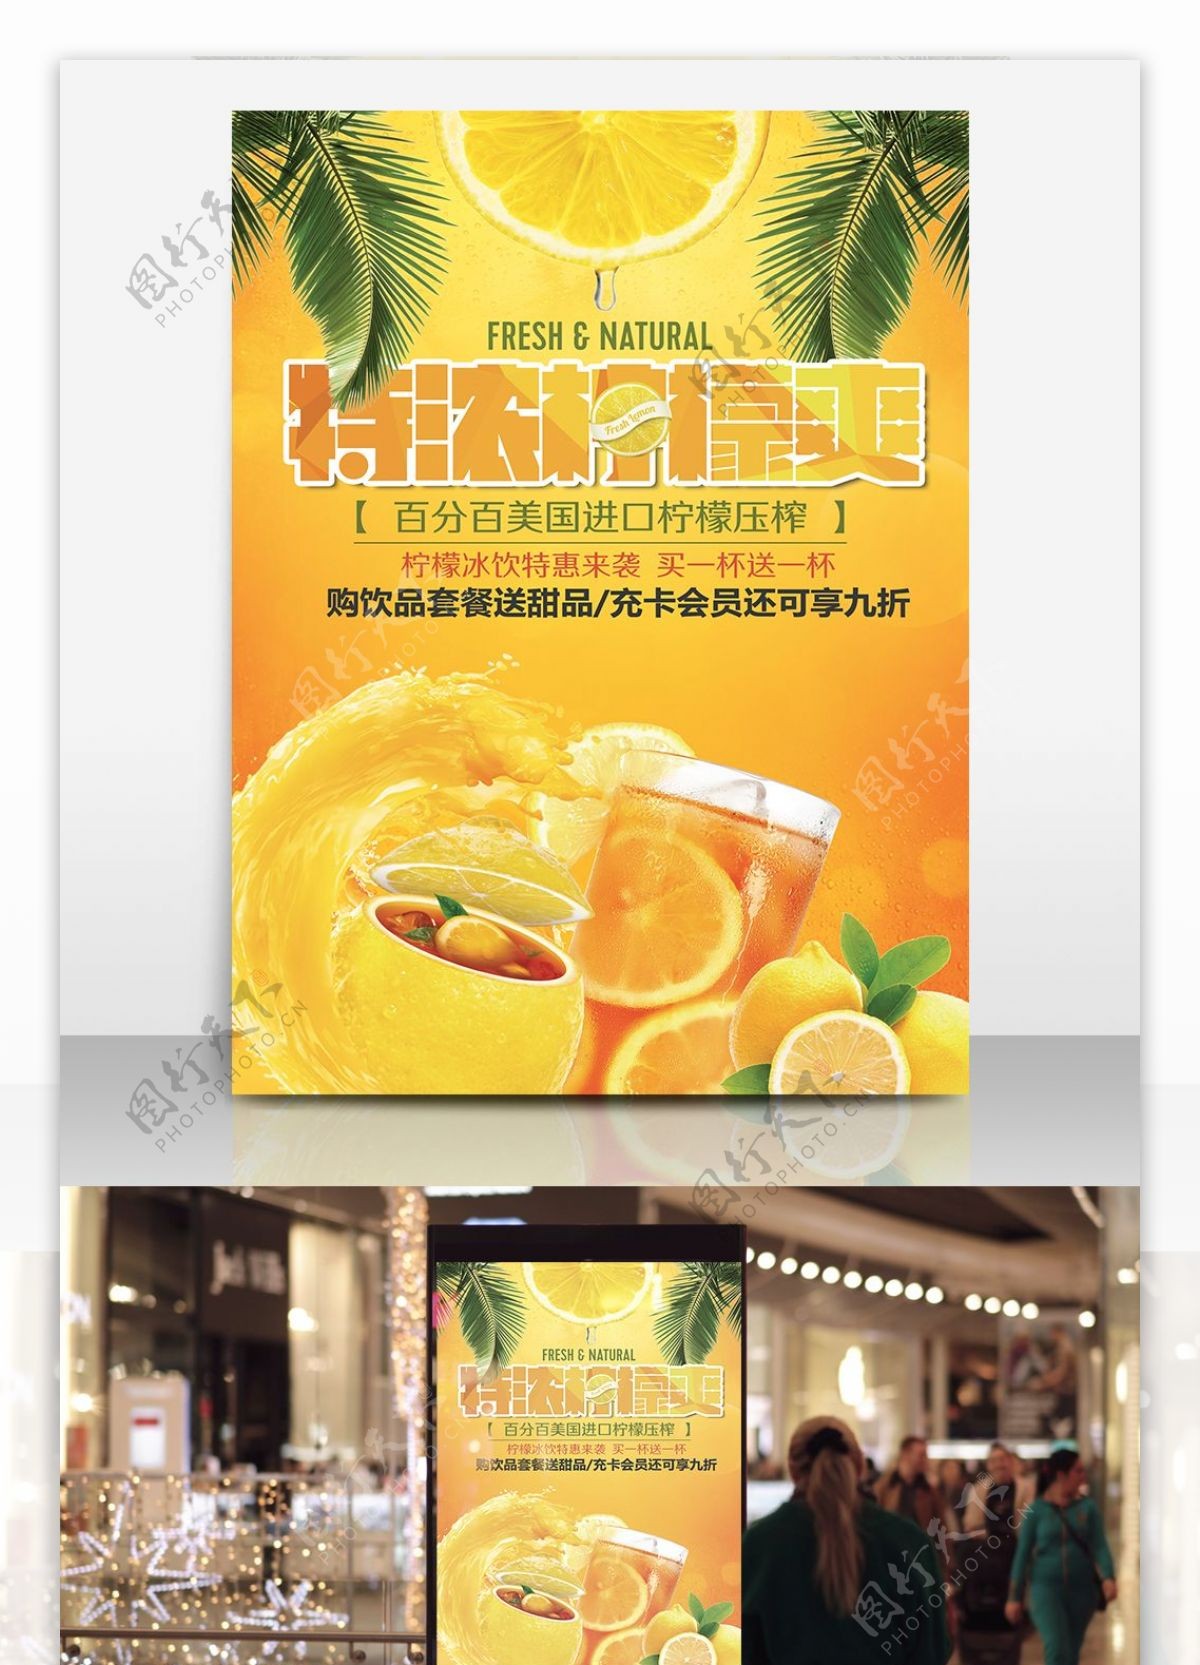 中黄色诱人夏日冰霜柠檬茶美食海报